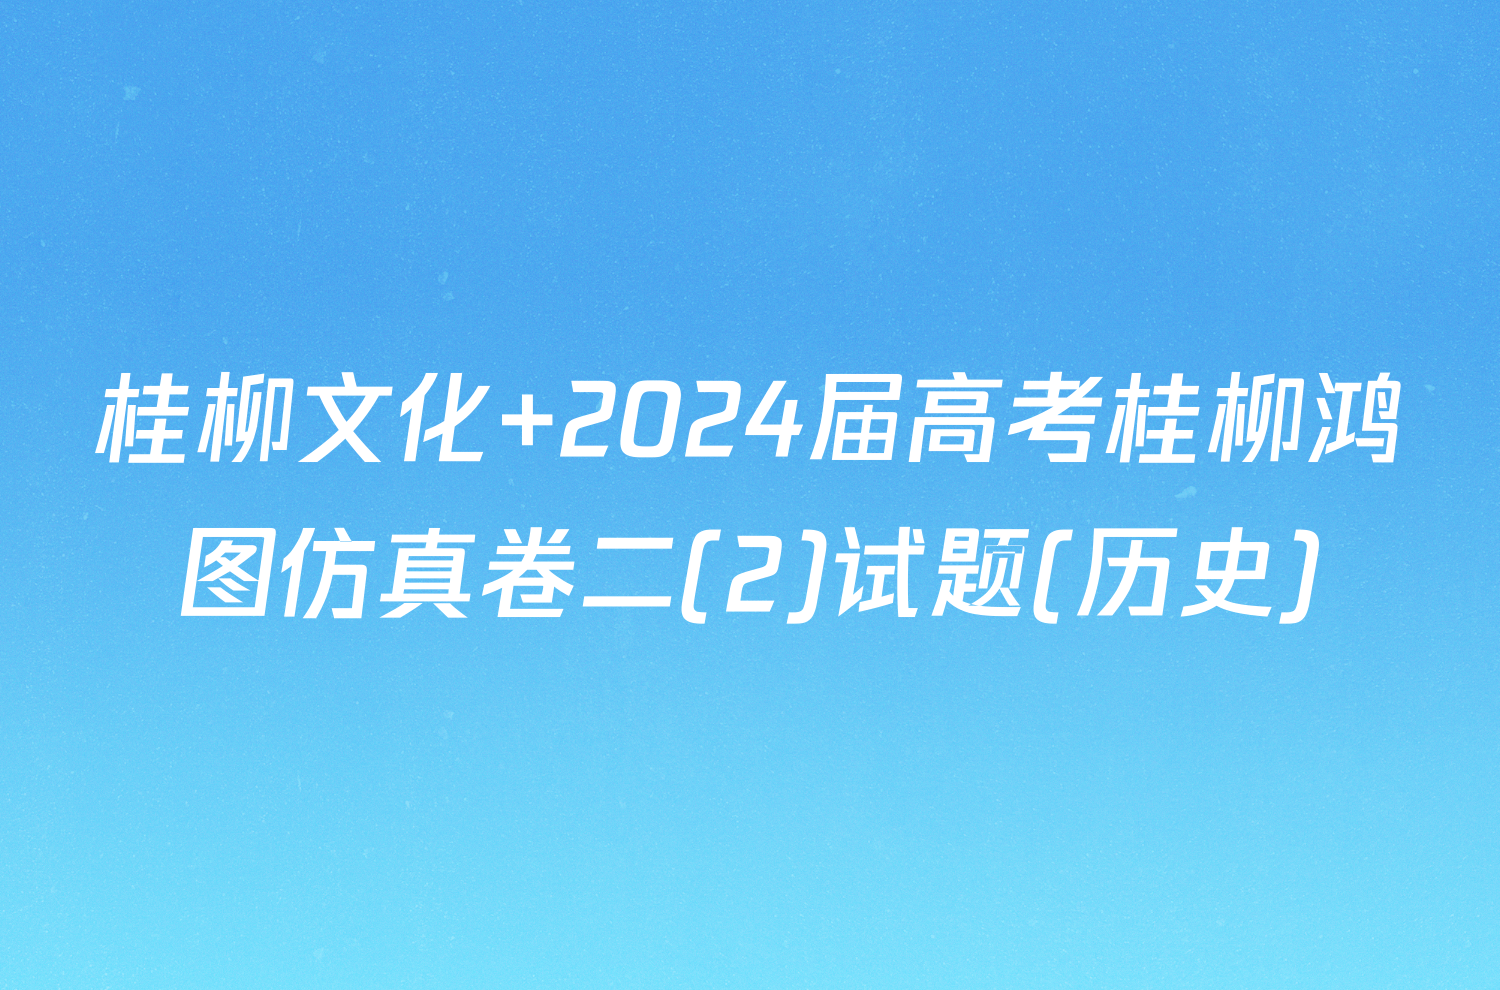 桂柳文化 2024届高考桂柳鸿图仿真卷二(2)试题(历史)